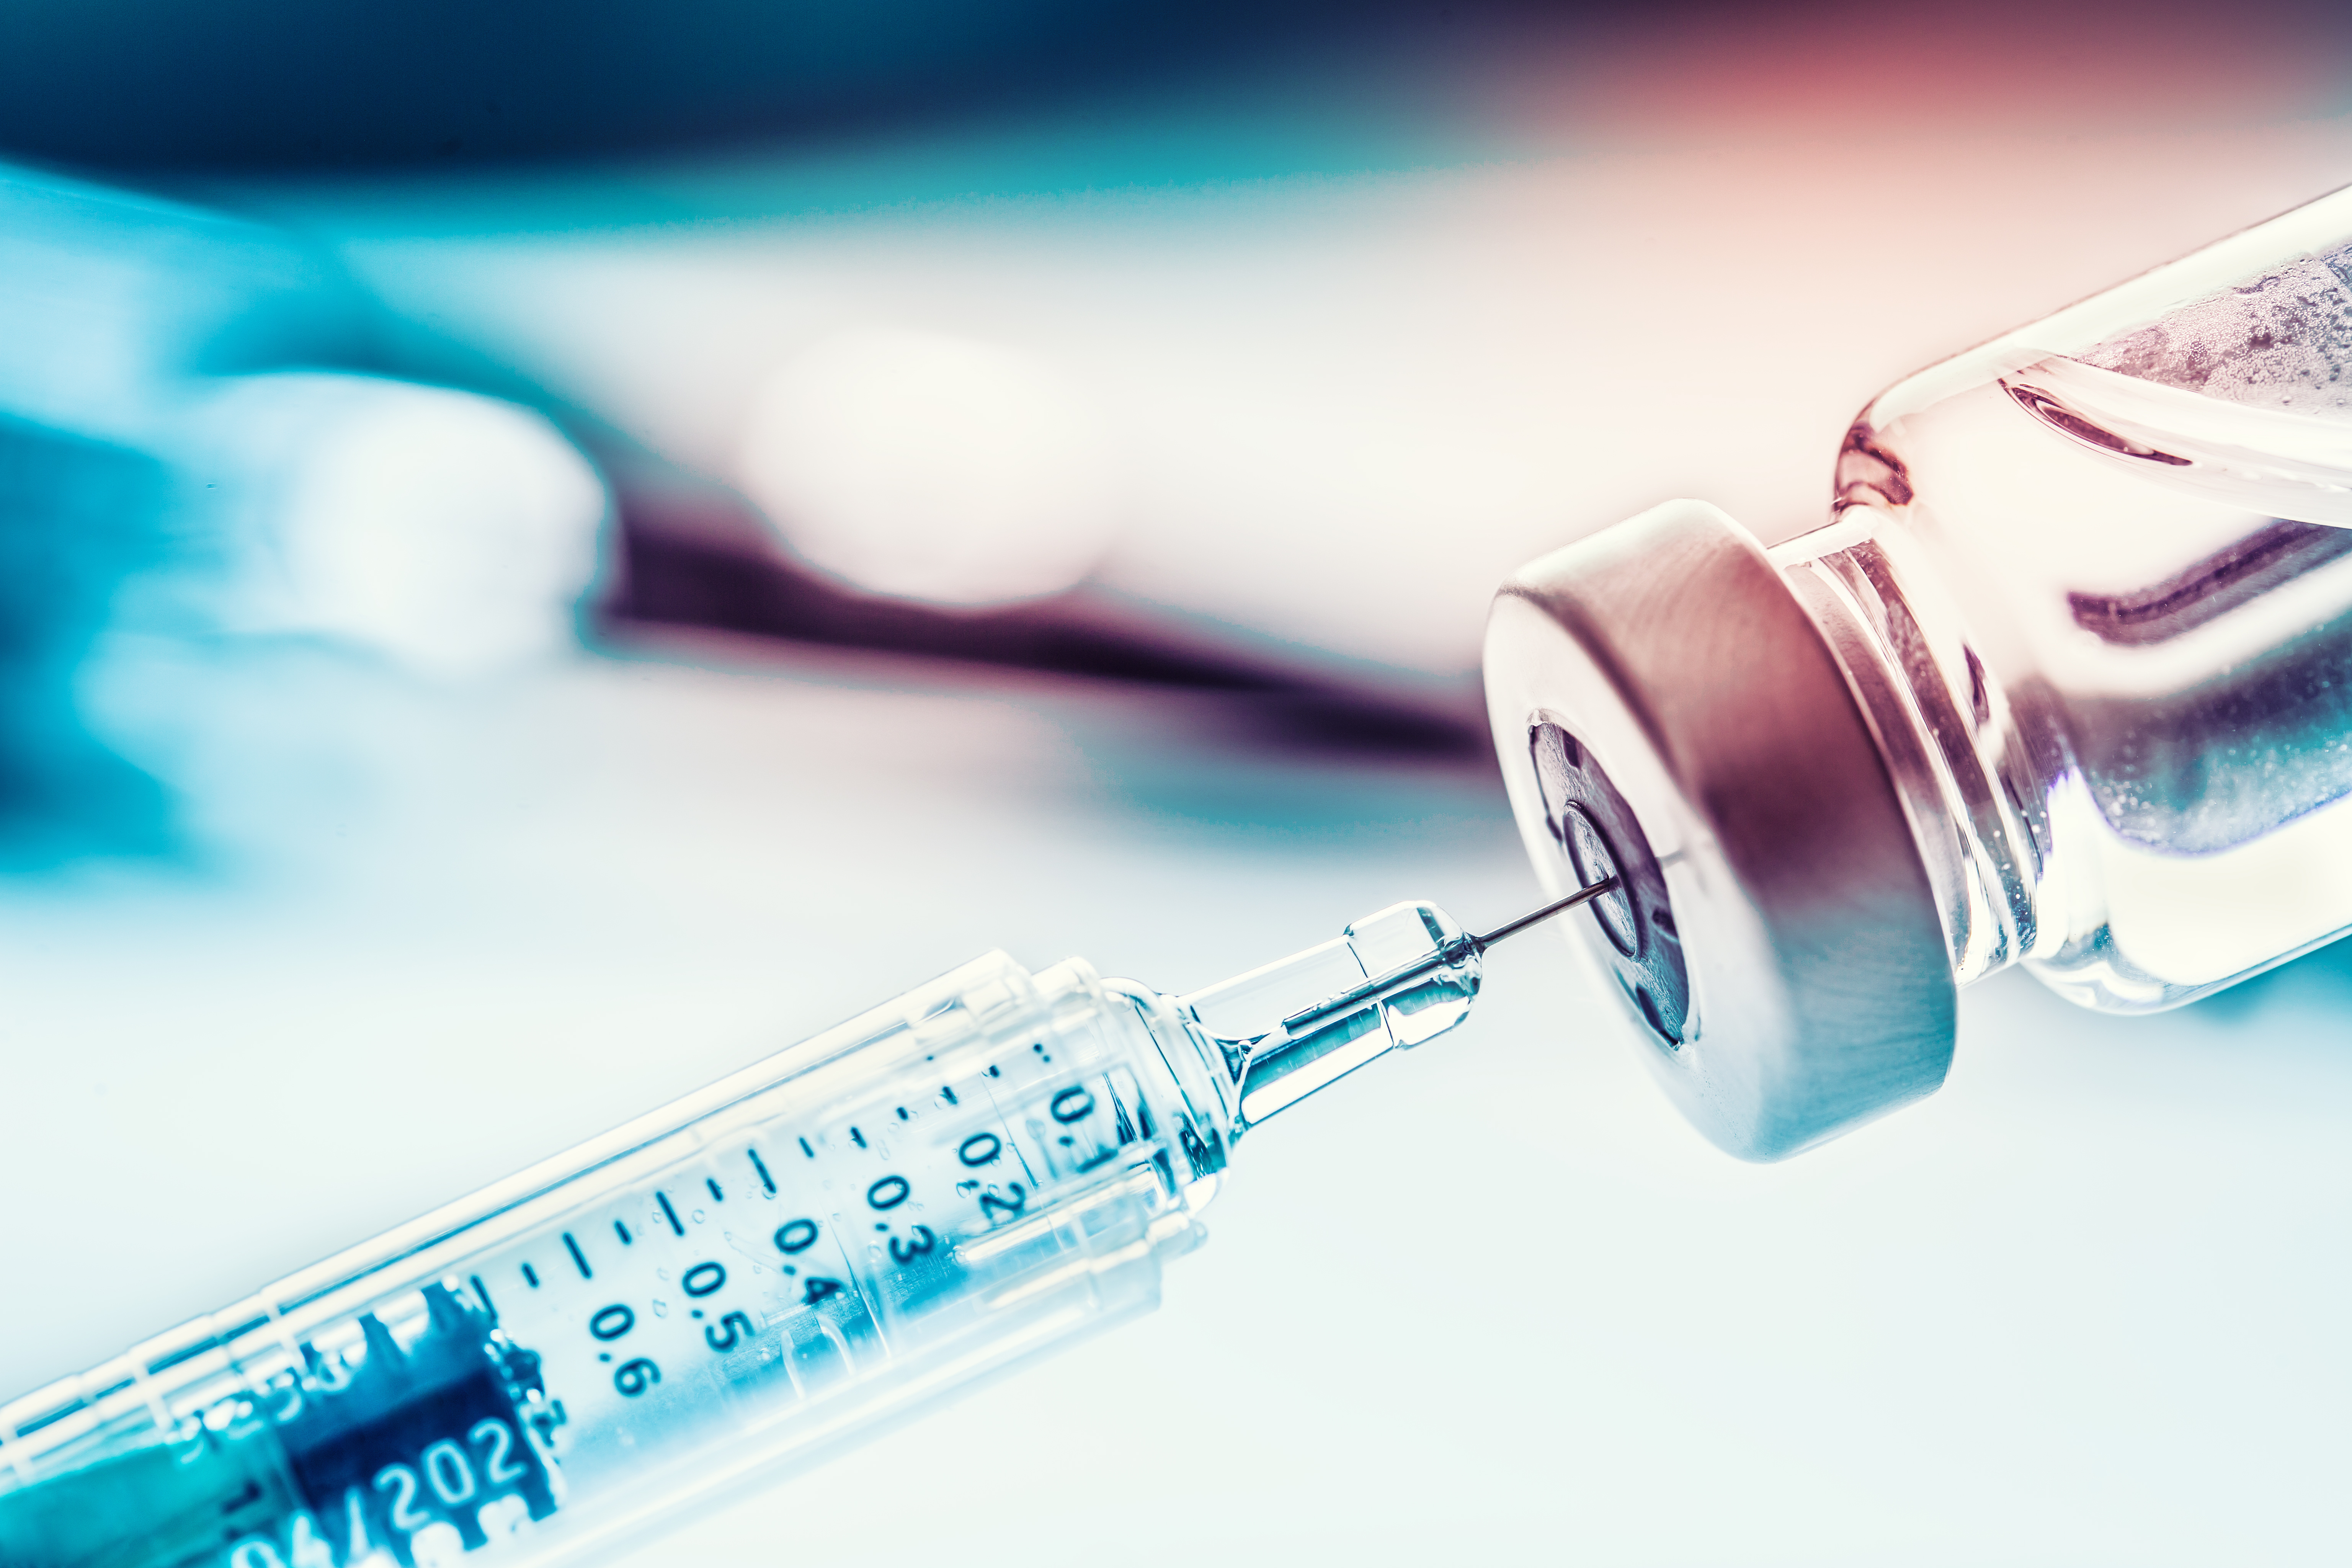 Sprawozdanie specjalne 19/2022: Unijne zamówienia szczepionek przeciwko COVID-19 - Mimo początkowych trudności zapewniono wystarczające ilości dawek, lecz proces zamówień nie został odpowiednio przeanalizowany